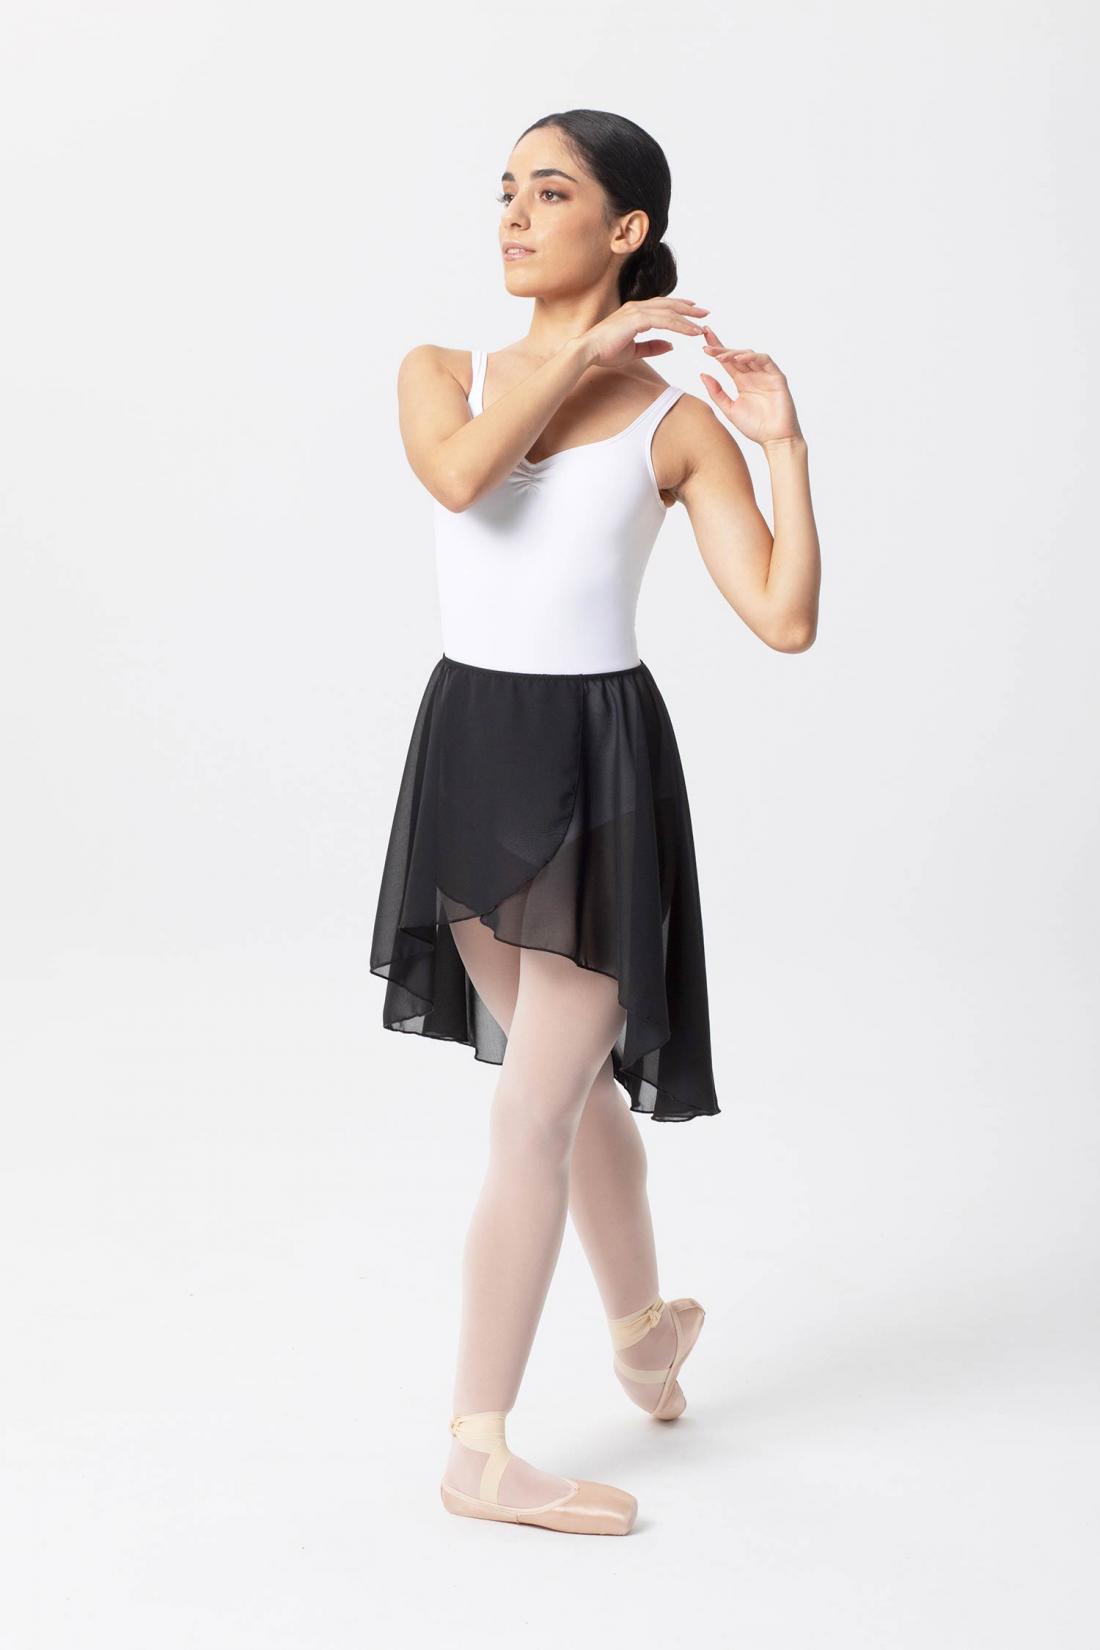 Falda Negra larga Ballet y Danza corte asimétrico de Intermezzo